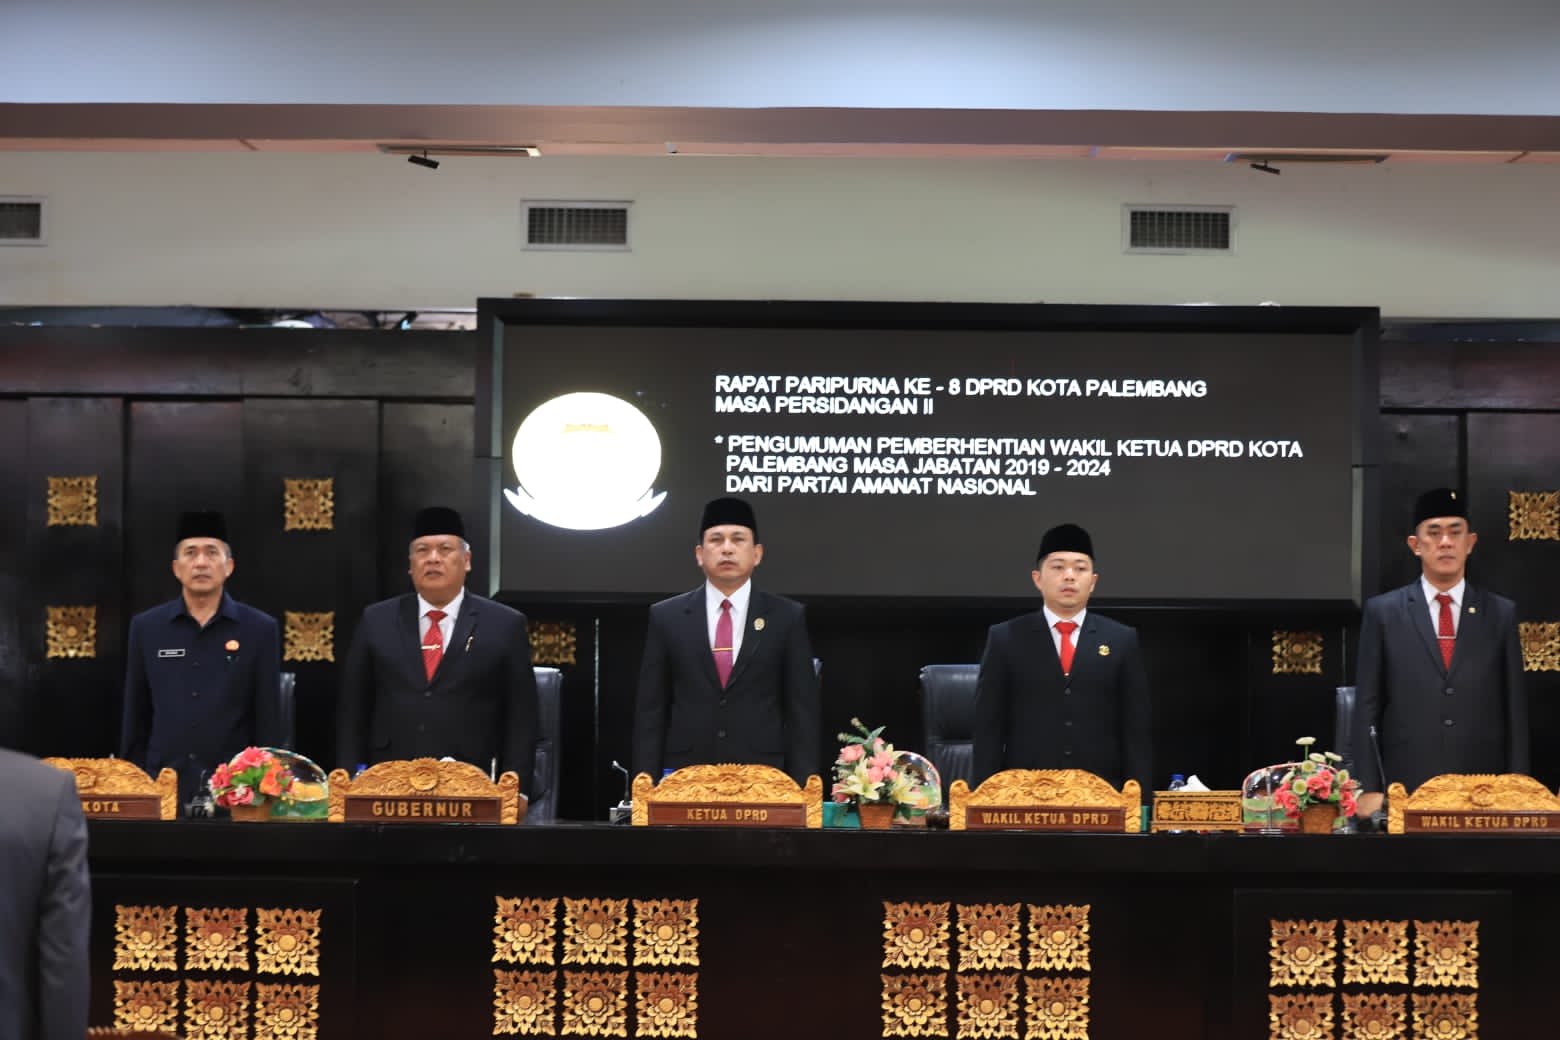 Rapat Paripurna MP II Terkait Pengumuman Pemberhentian Wakil Ketua DPRD Kota Palembang dari Partai Amanat Nasional